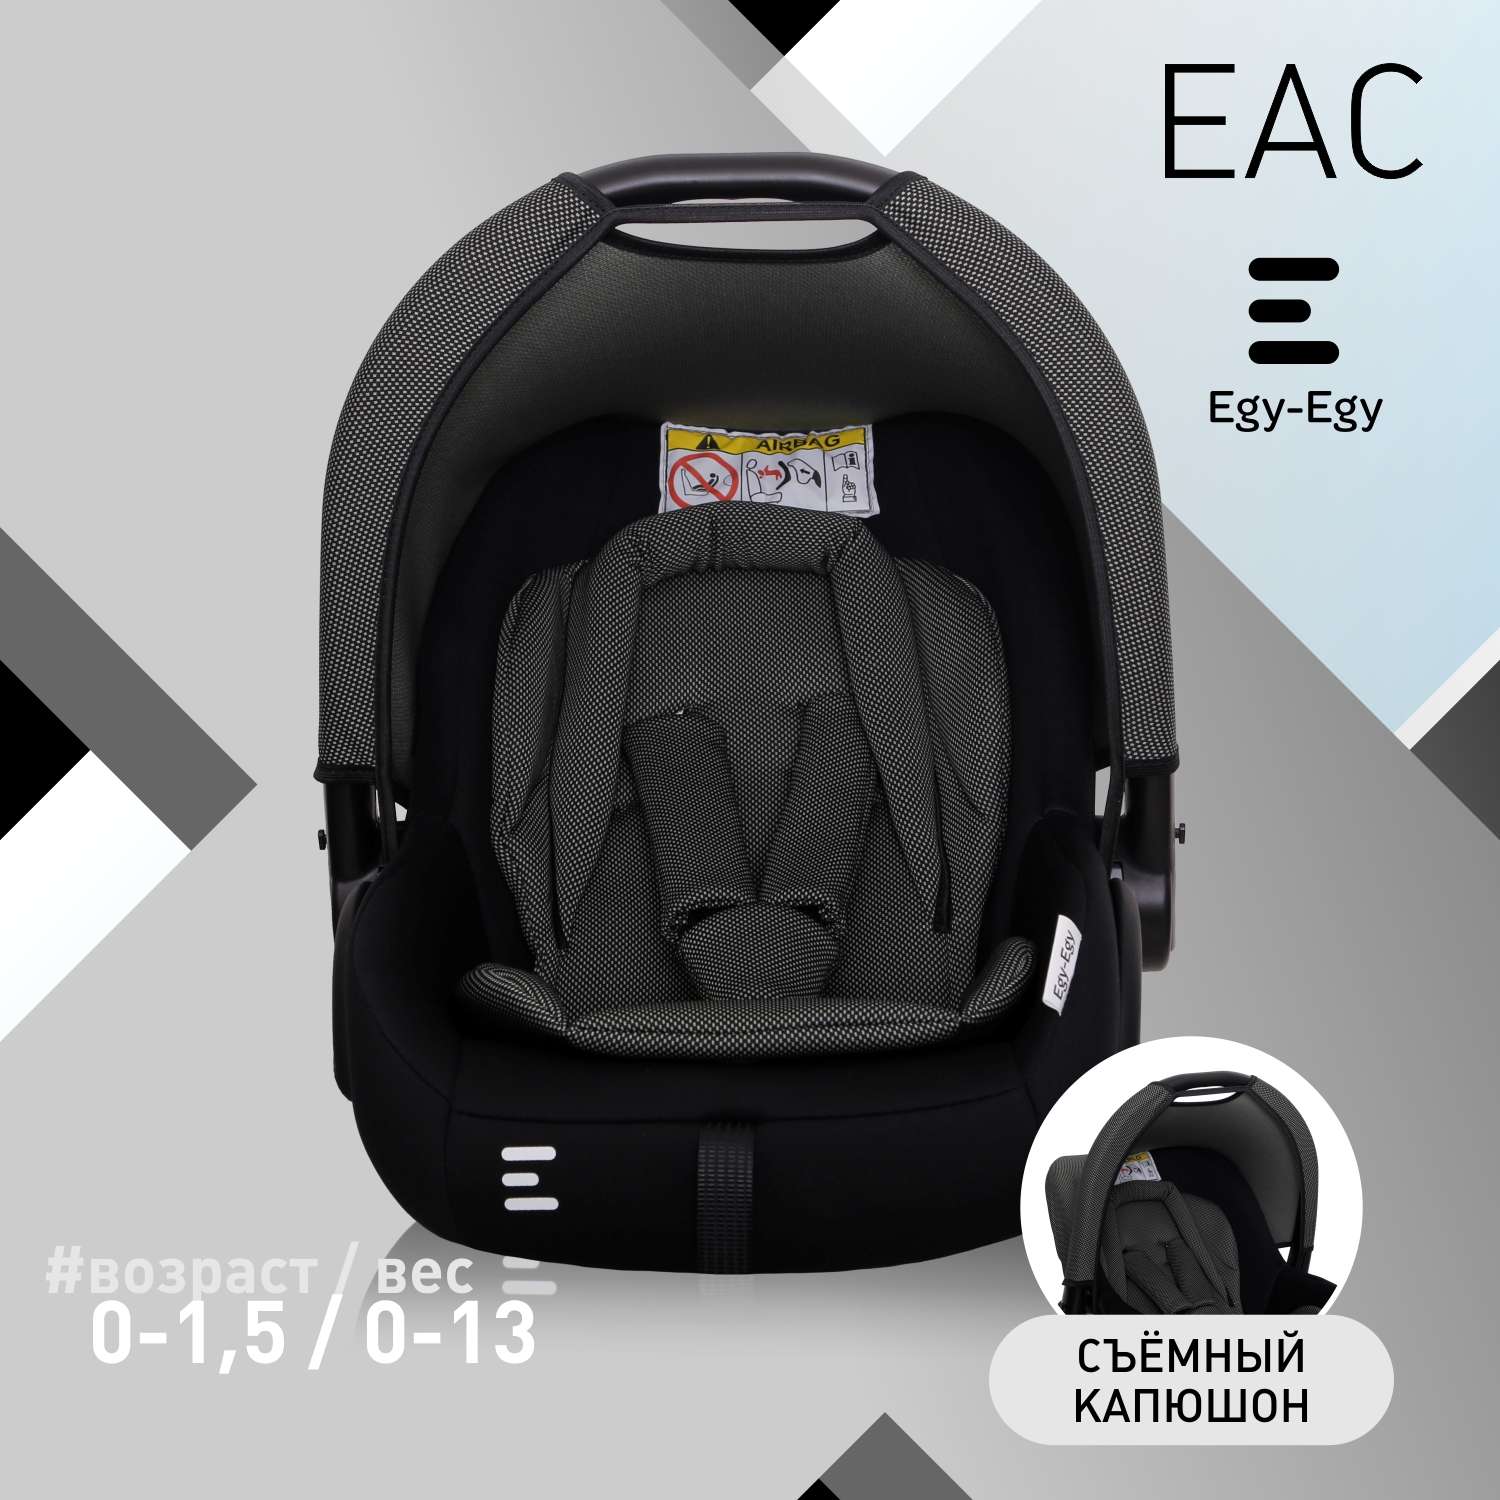 Детское автокресло Еду-Еду УУД KS 341 гр. 0+ черный карбон серый - фото 1